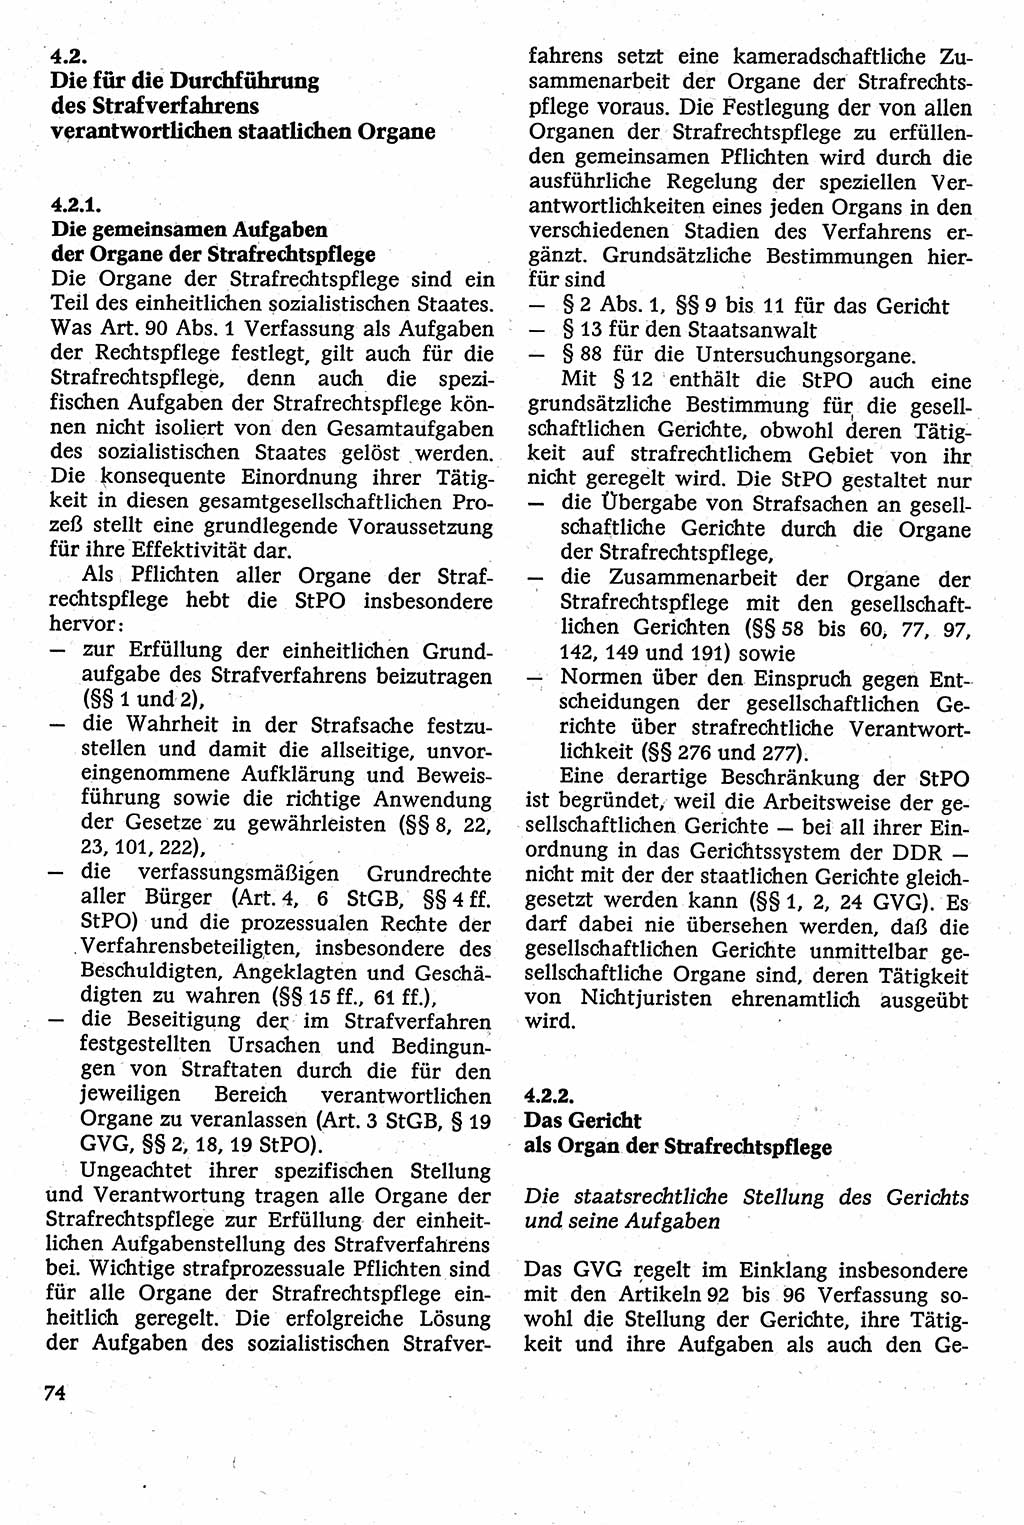 Strafverfahrensrecht [Deutsche Demokratische Republik (DDR)], Lehrbuch 1982, Seite 74 (Strafverf.-R. DDR Lb. 1982, S. 74)